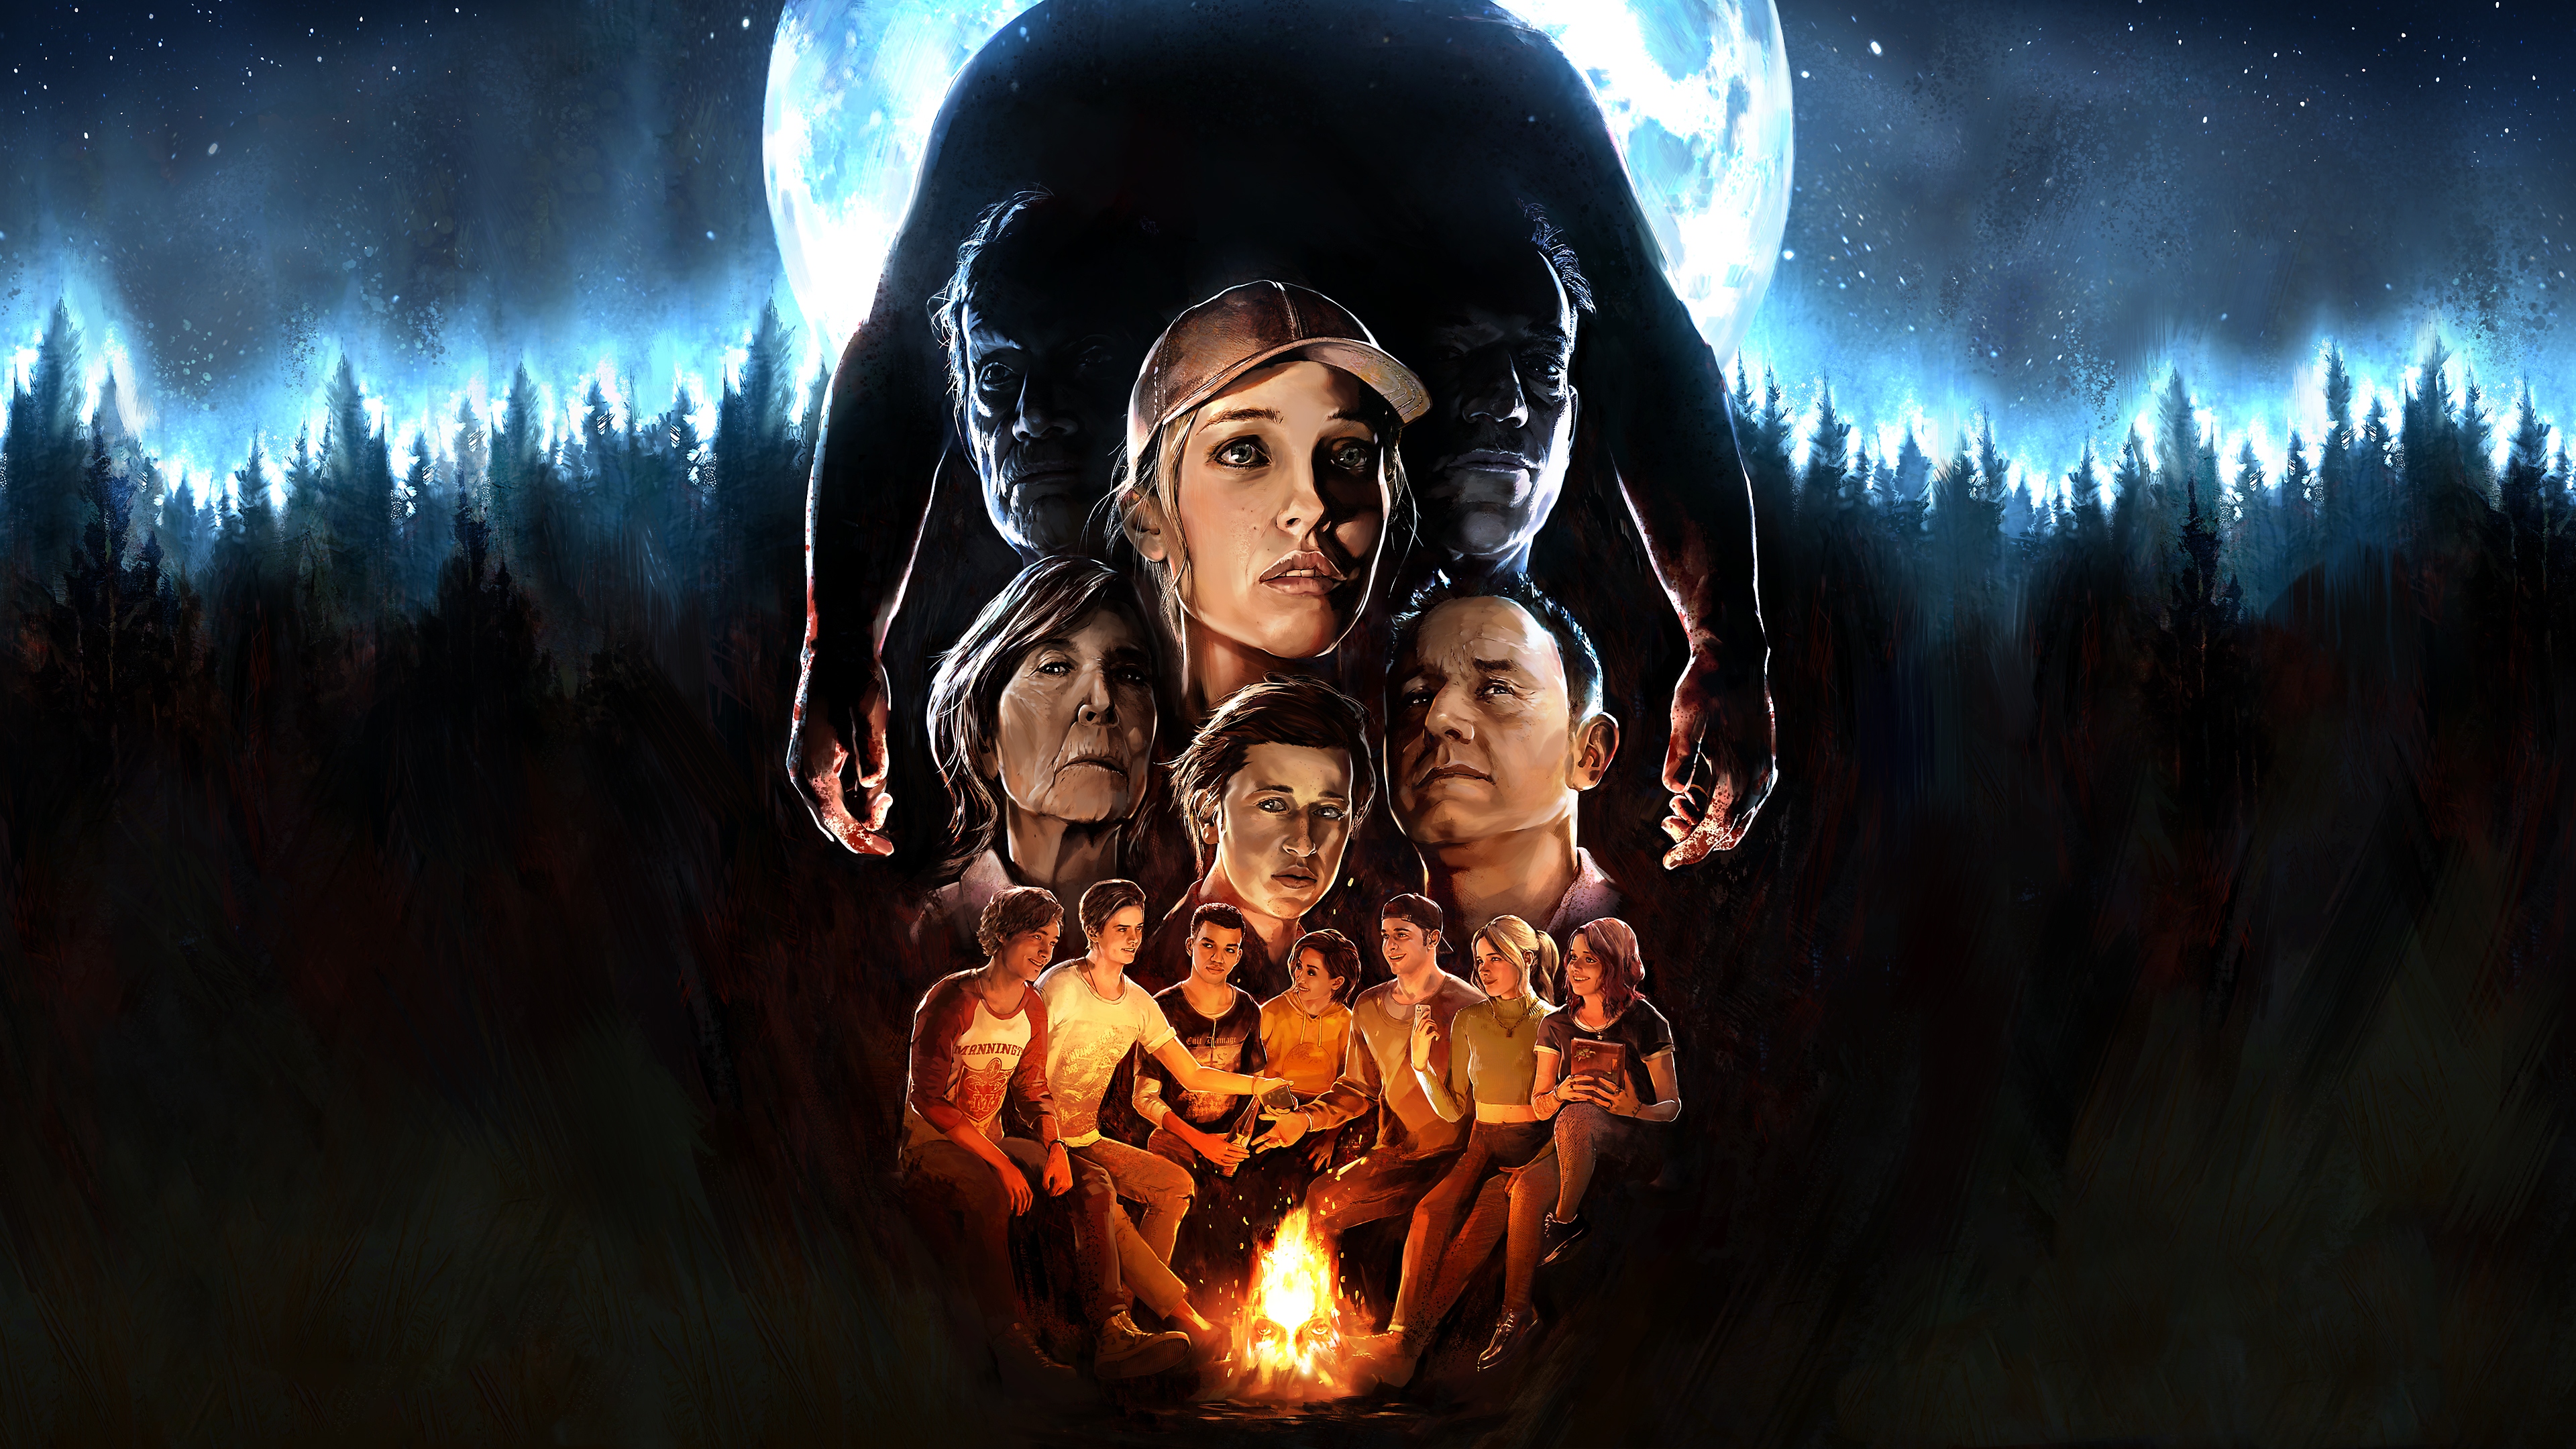 The Quarry – иллюстрация с главными героями, нарисованными вручную, на фоне темного леса.